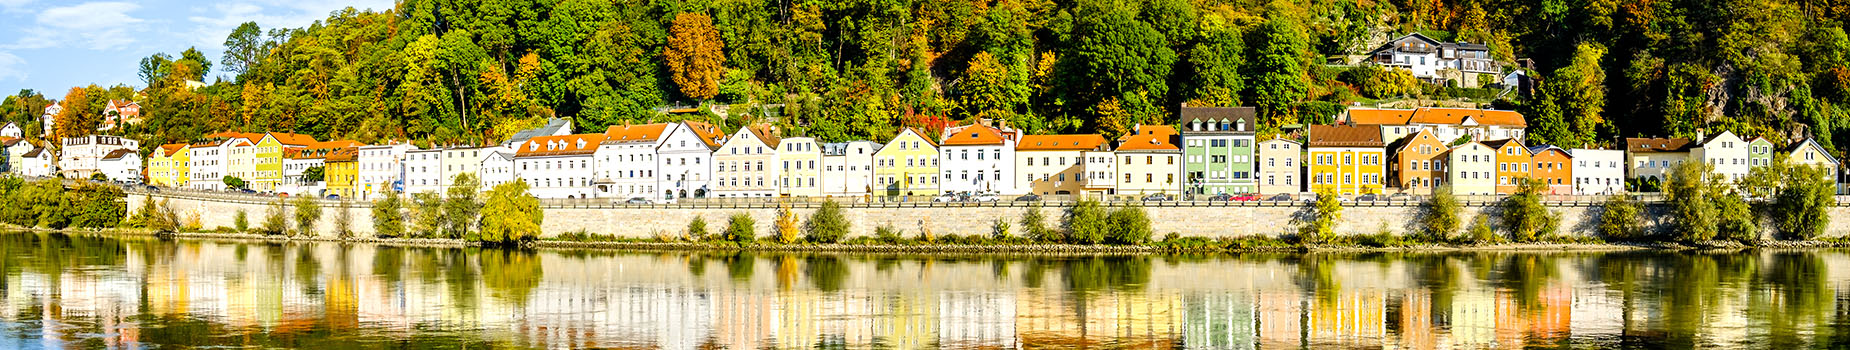 Passau in Duitsland